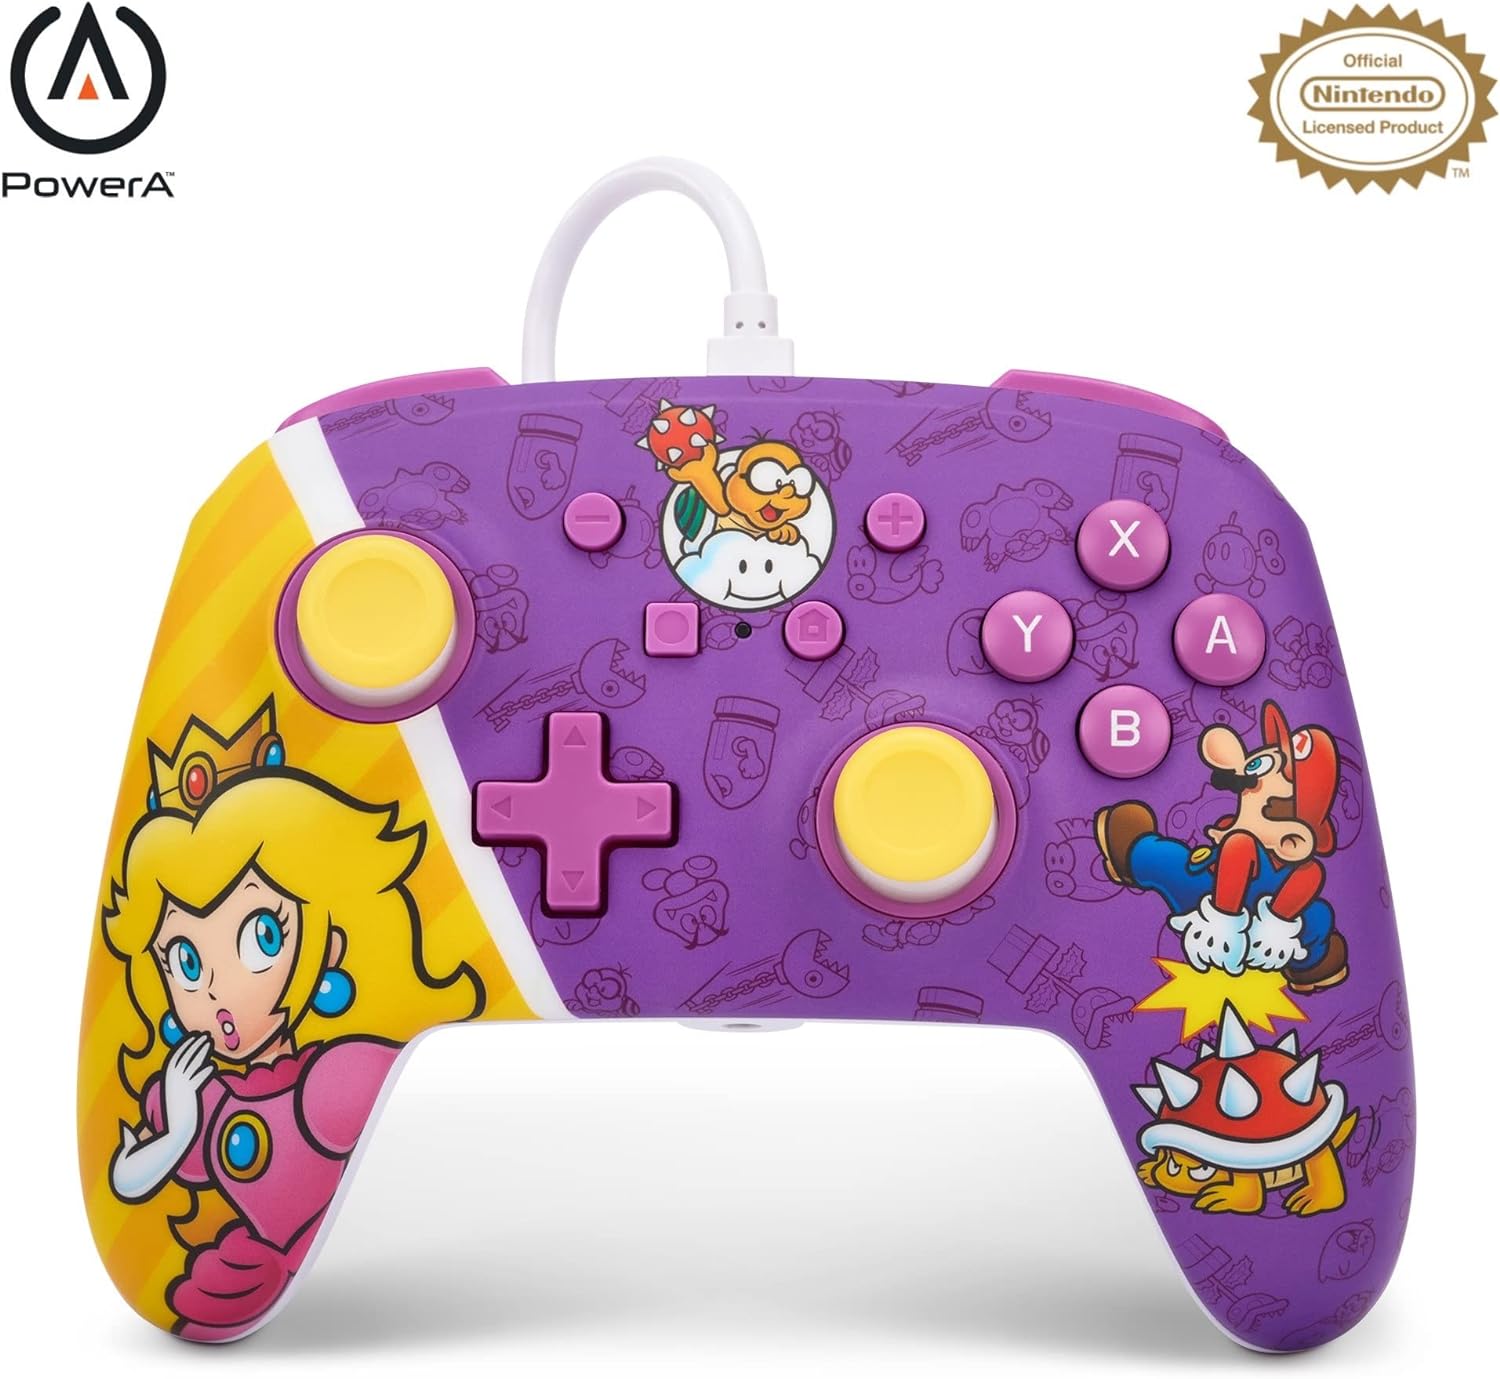 Control cableado mejorado PowerA para Nintendo Switch – La batalla de la Princesa Peach – La batalla de la Princesa Peach Edition